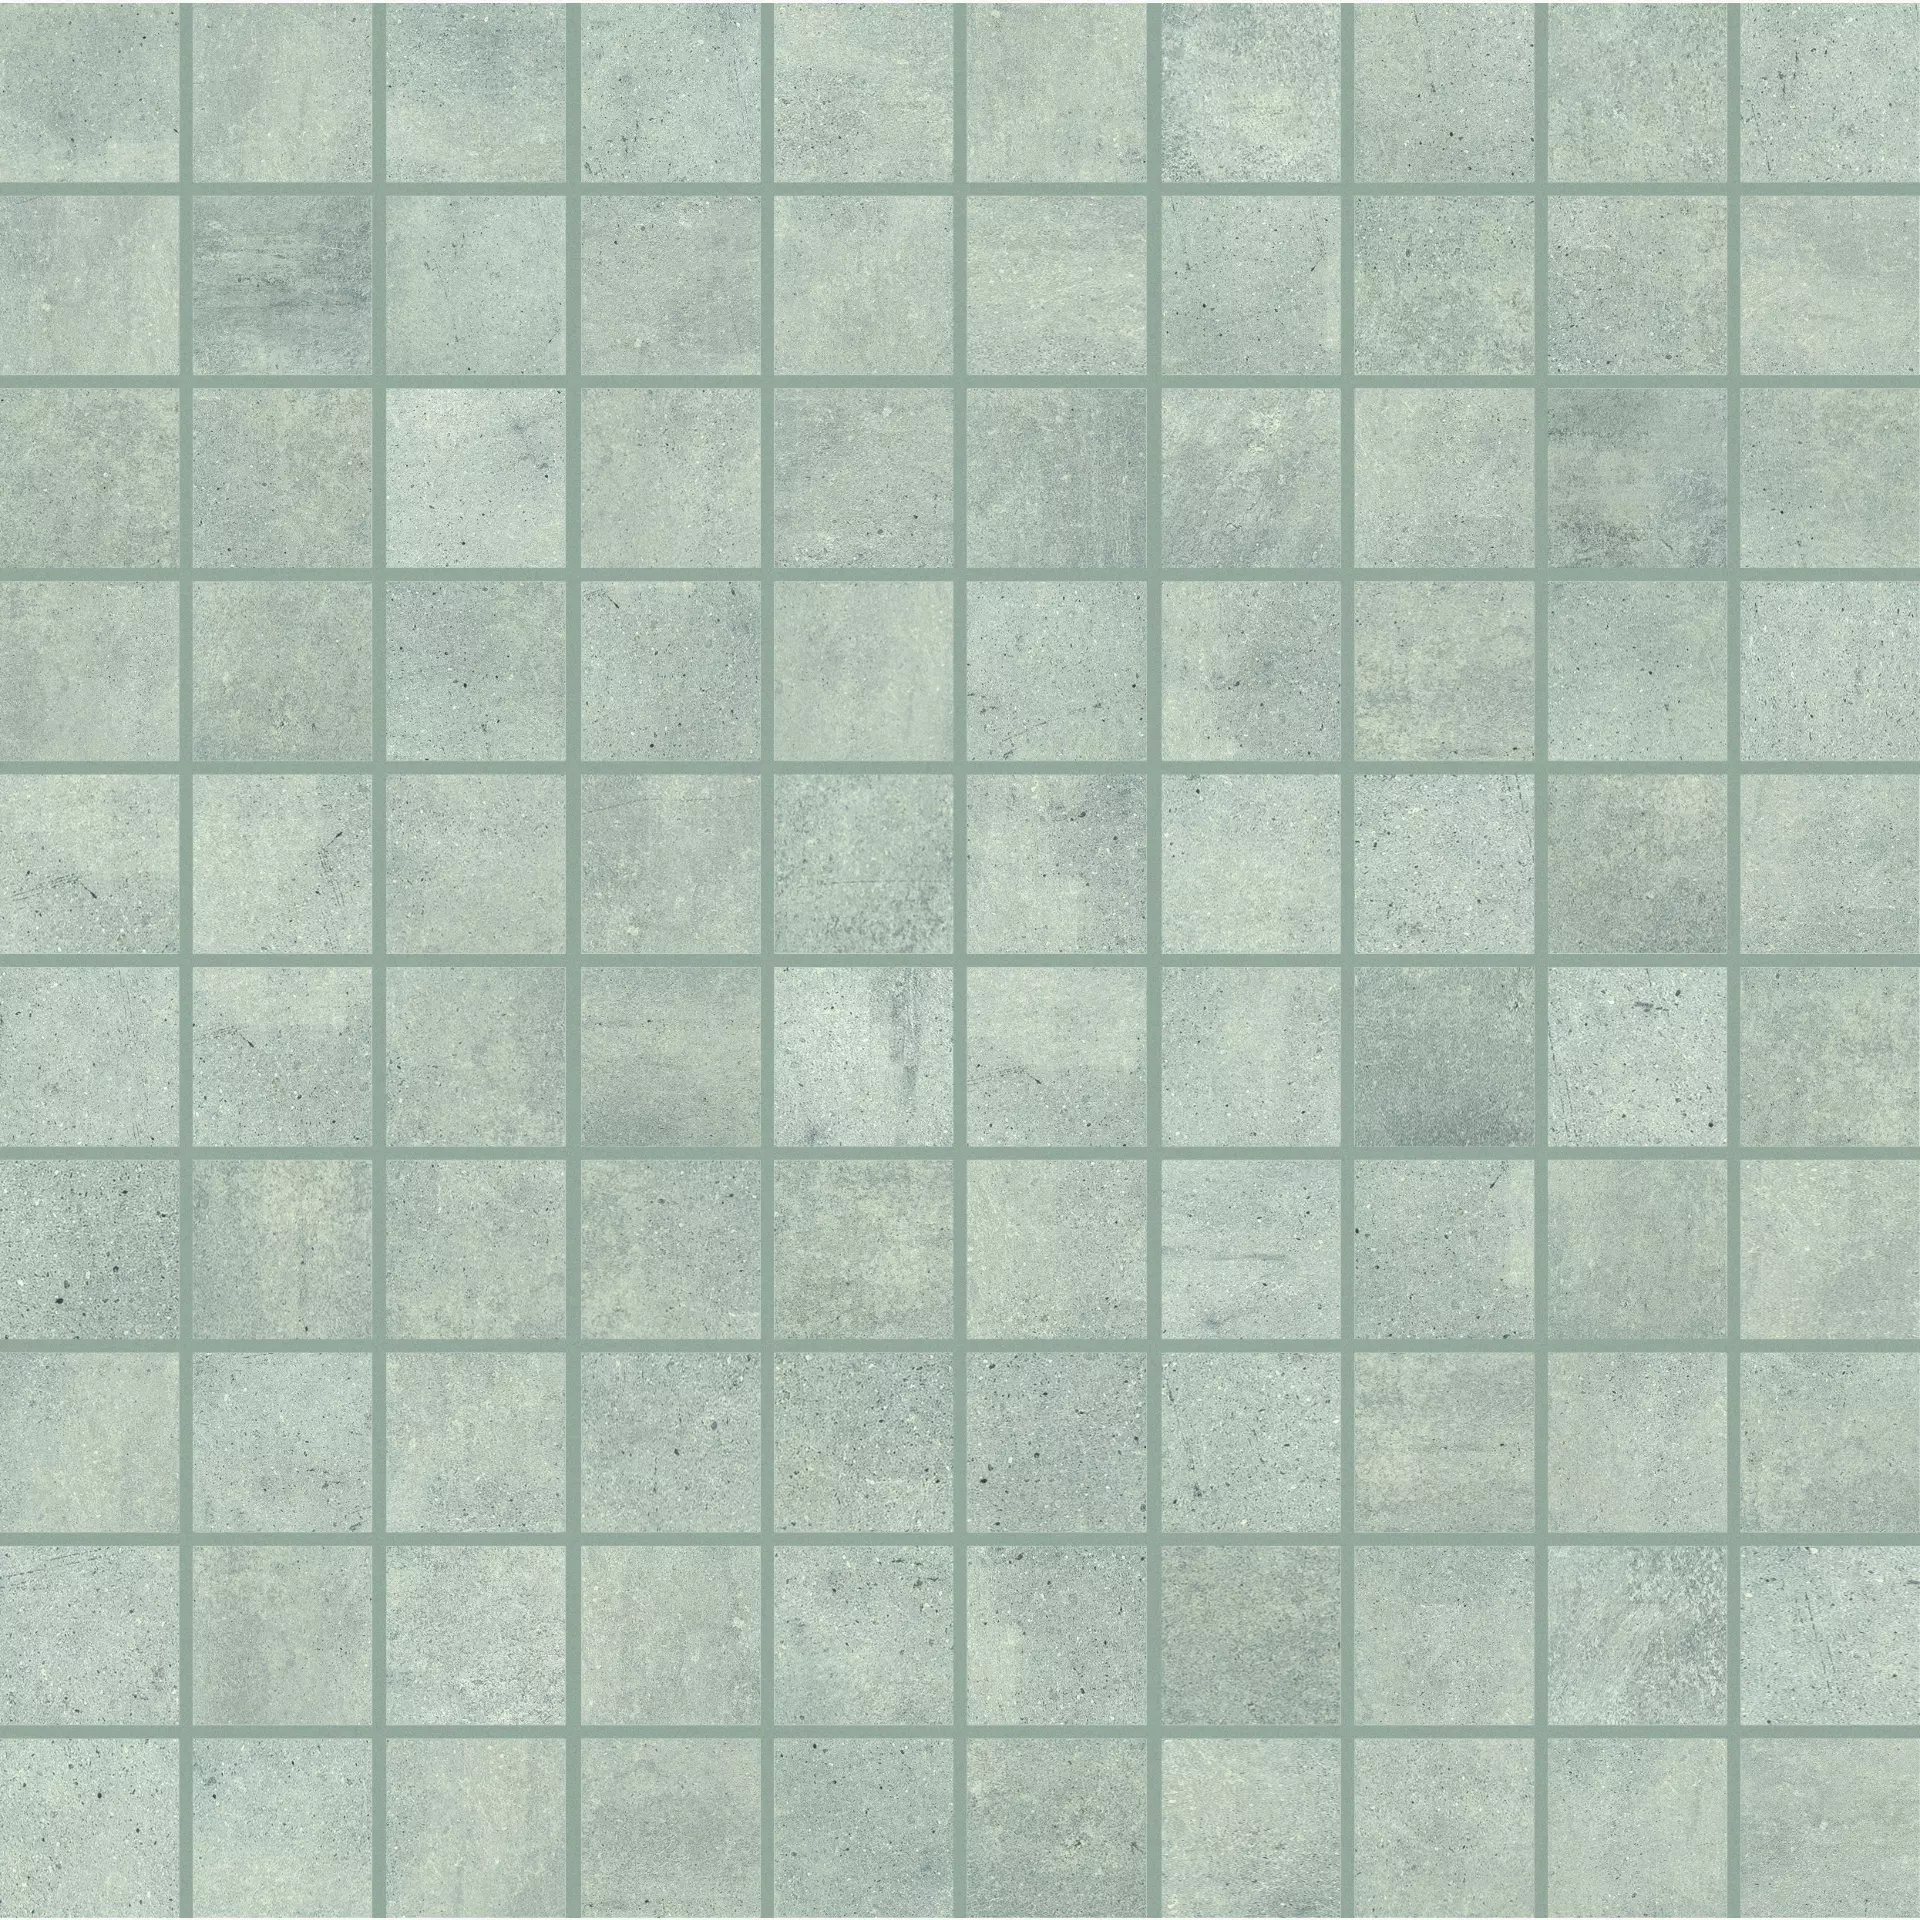 Florim Rawtech Raw-Dust Naturale – Matt Mosaic 3x3 753906 3x3cm rectified 9mm